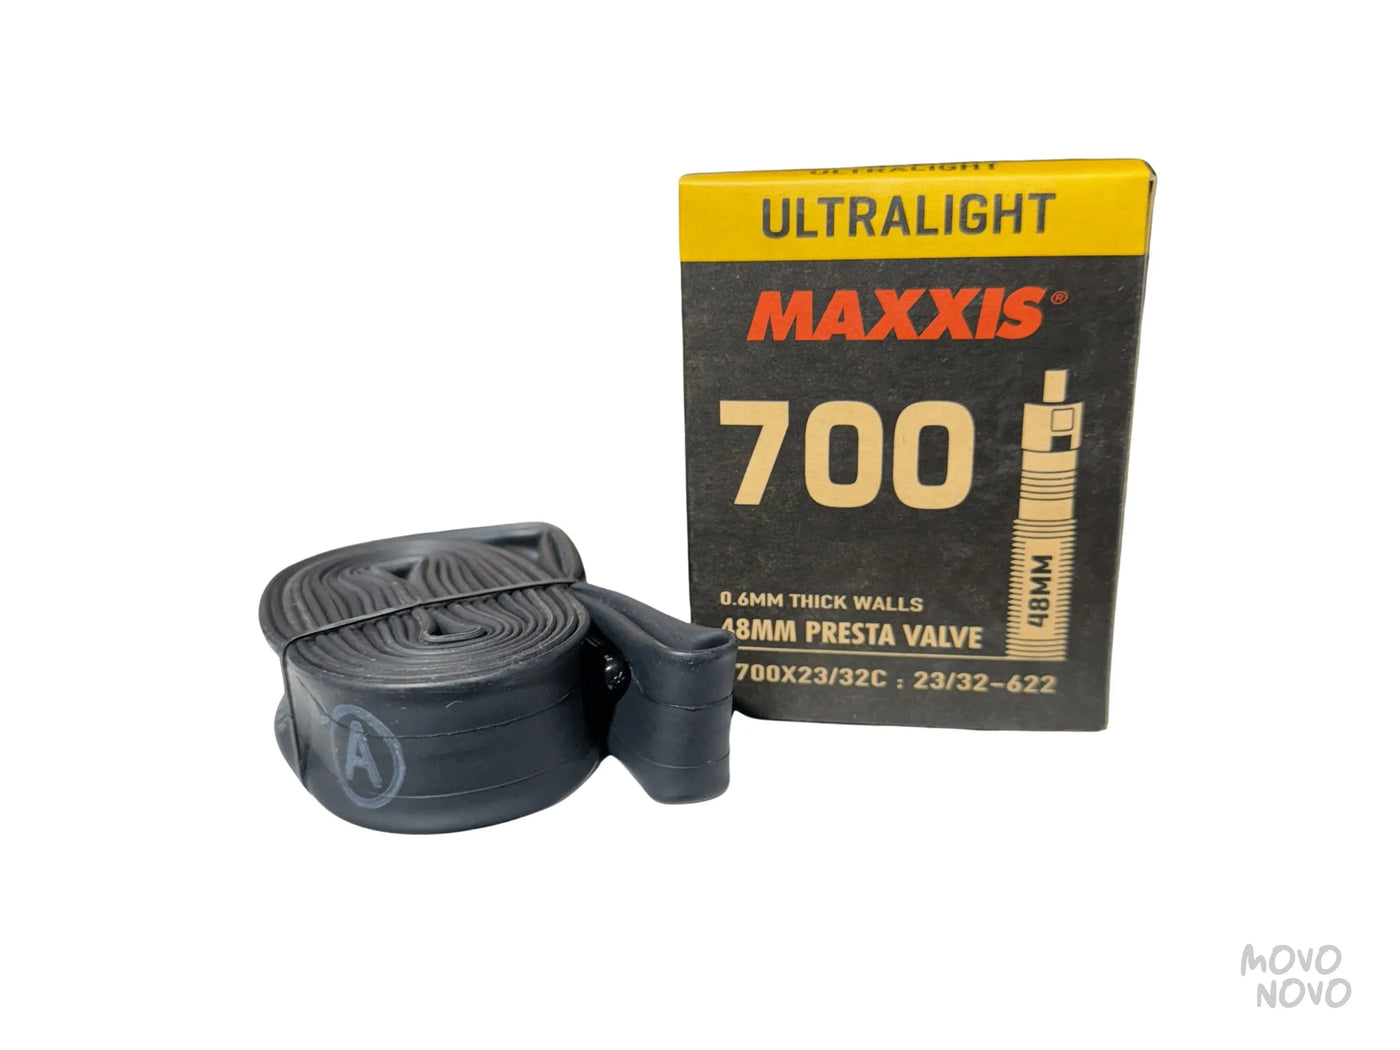 Camara Maxxis Ultralight 700x23/32 48mm